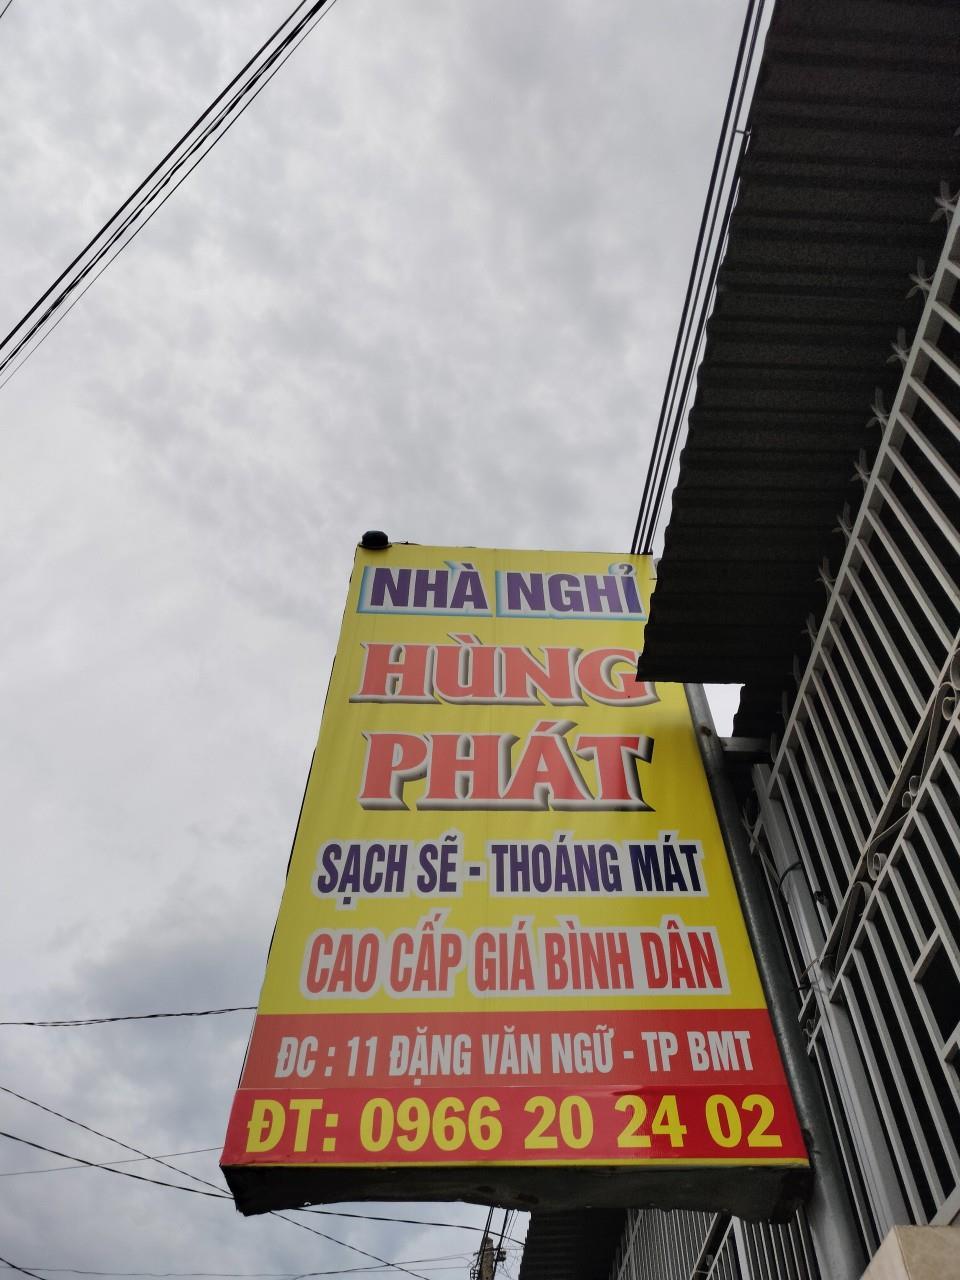 NHÀ NGHỈ HÙNG PHÁT Tại TP Buôn Ma Thuột Cho Thuê Phòng Theo GIỜ, NGÀY, THÁNG.405959